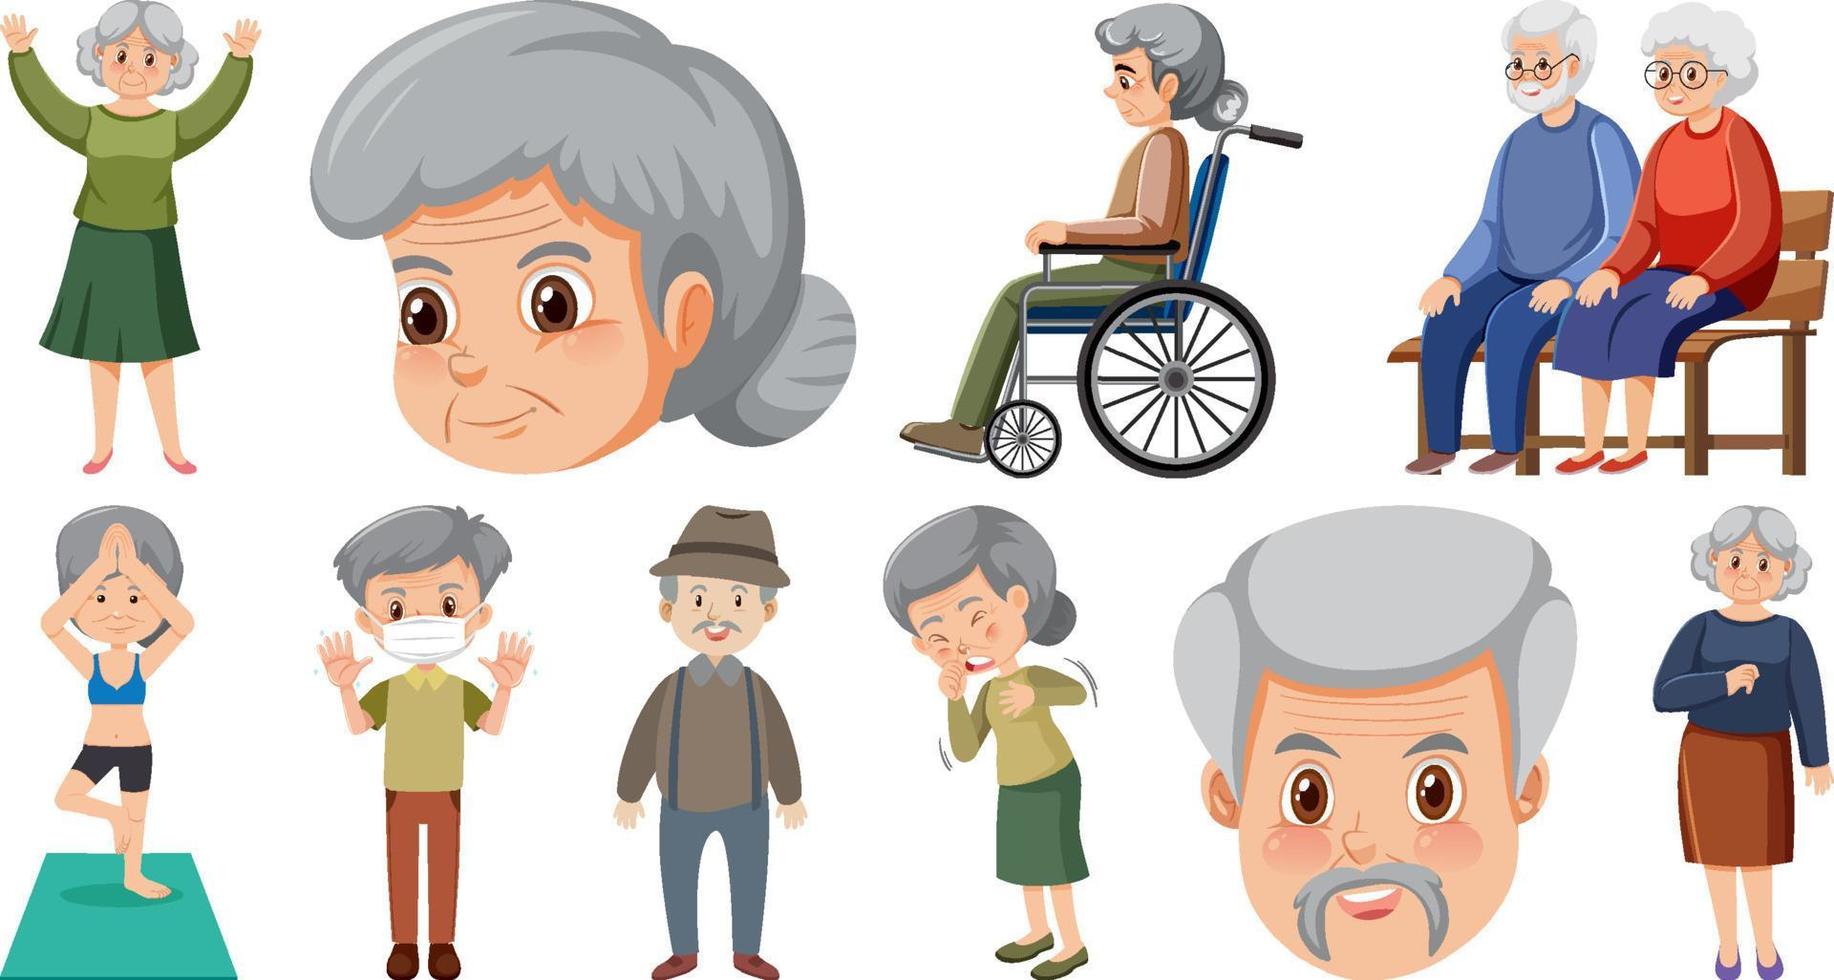 samling av äldre människor ikoner vektor